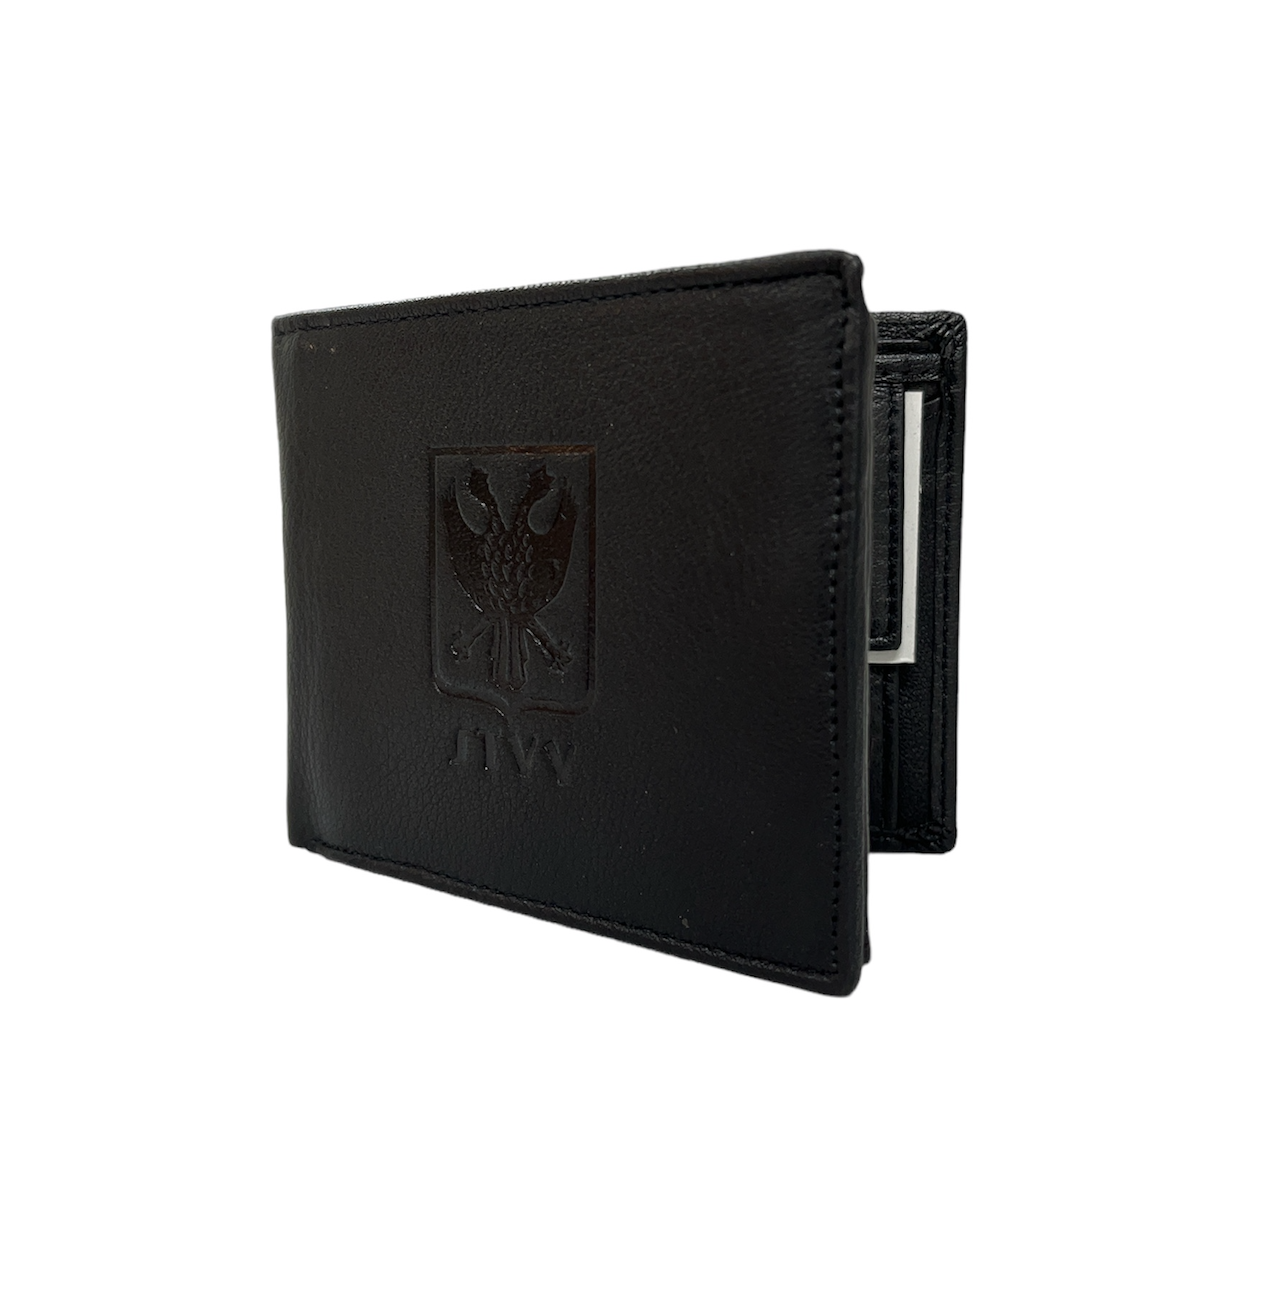 Topfanz Portefeuille en cuir noire avec logo STVV